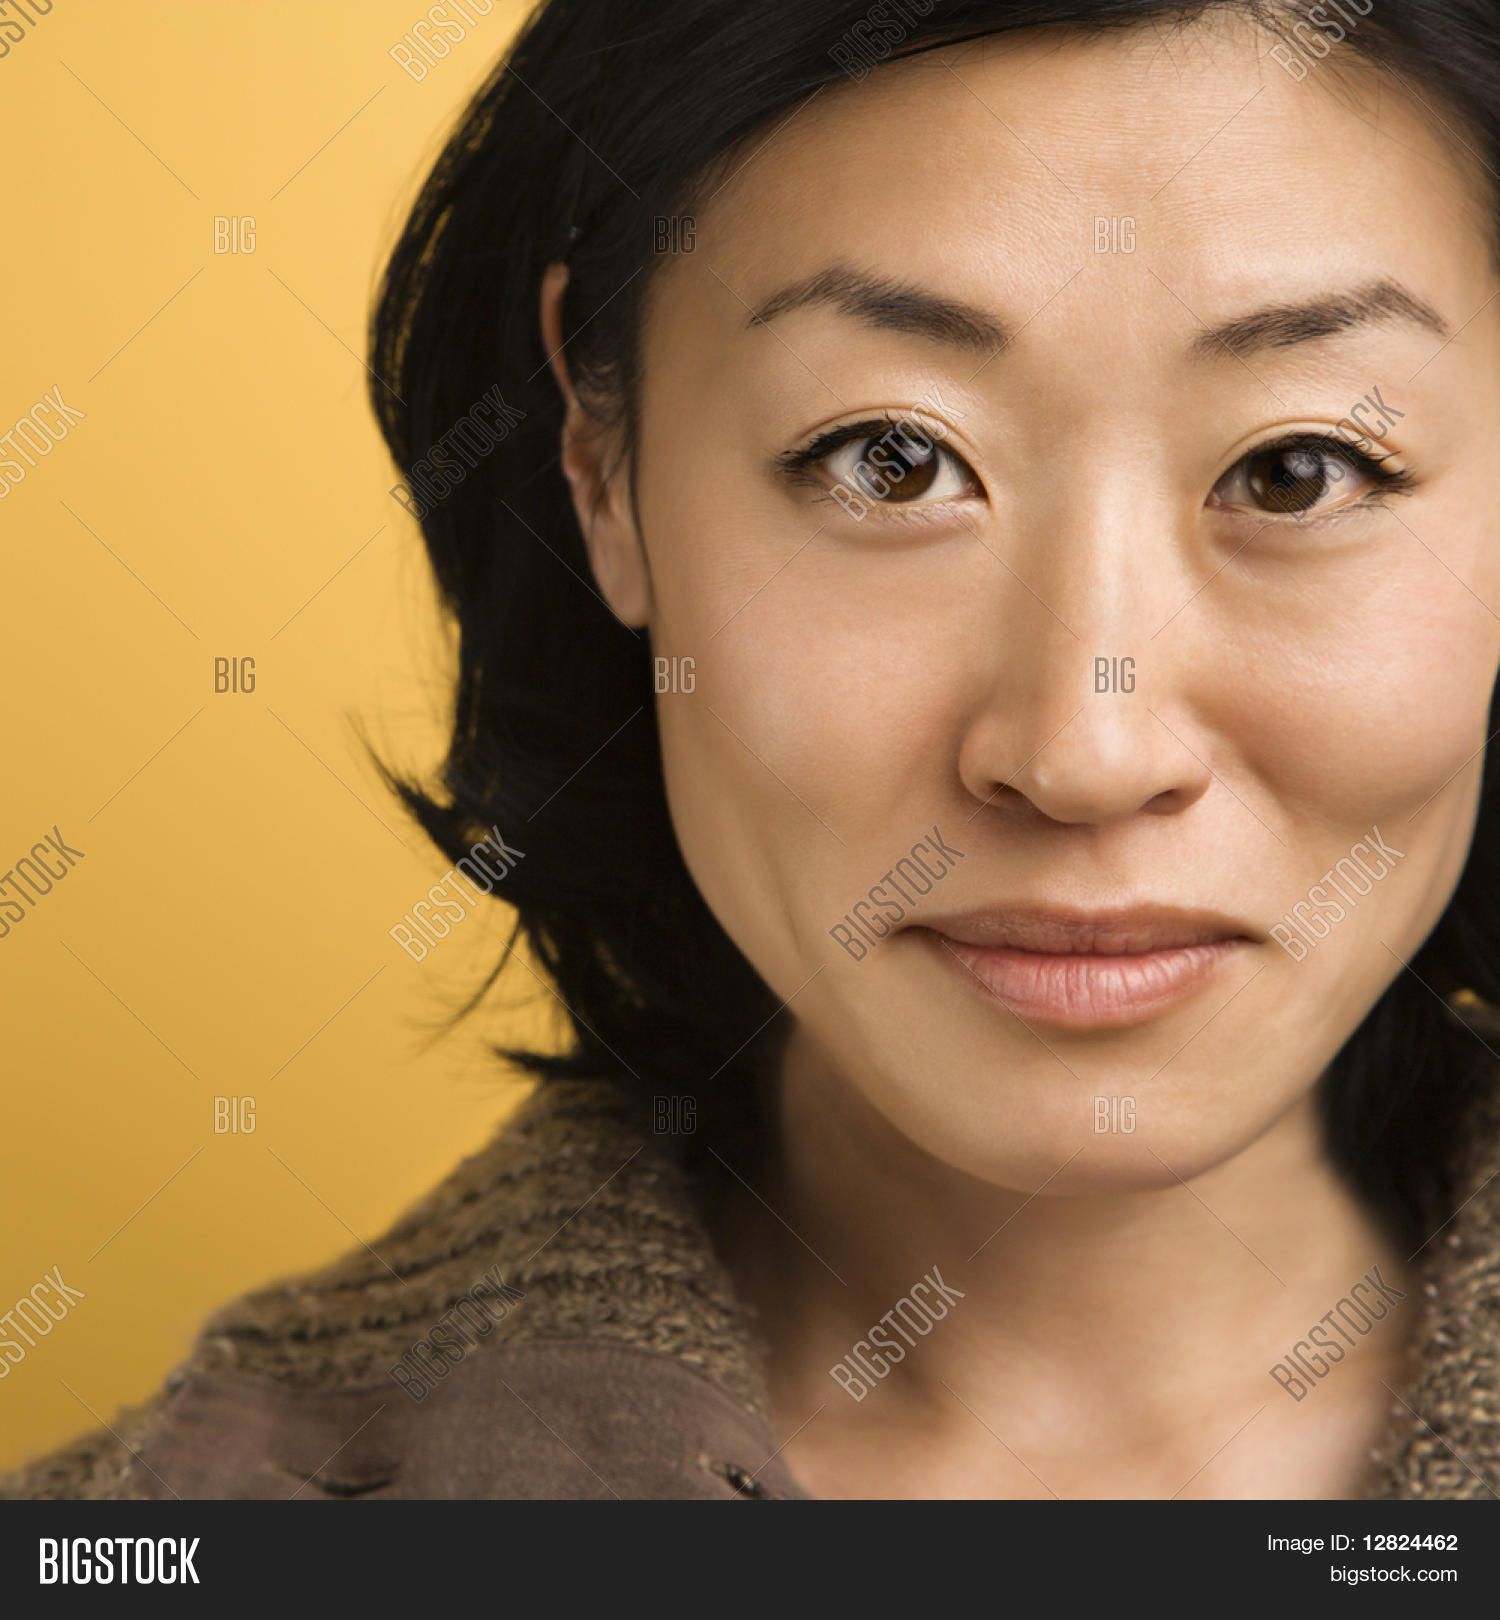 Wildcat reccomend Asian portrait woman